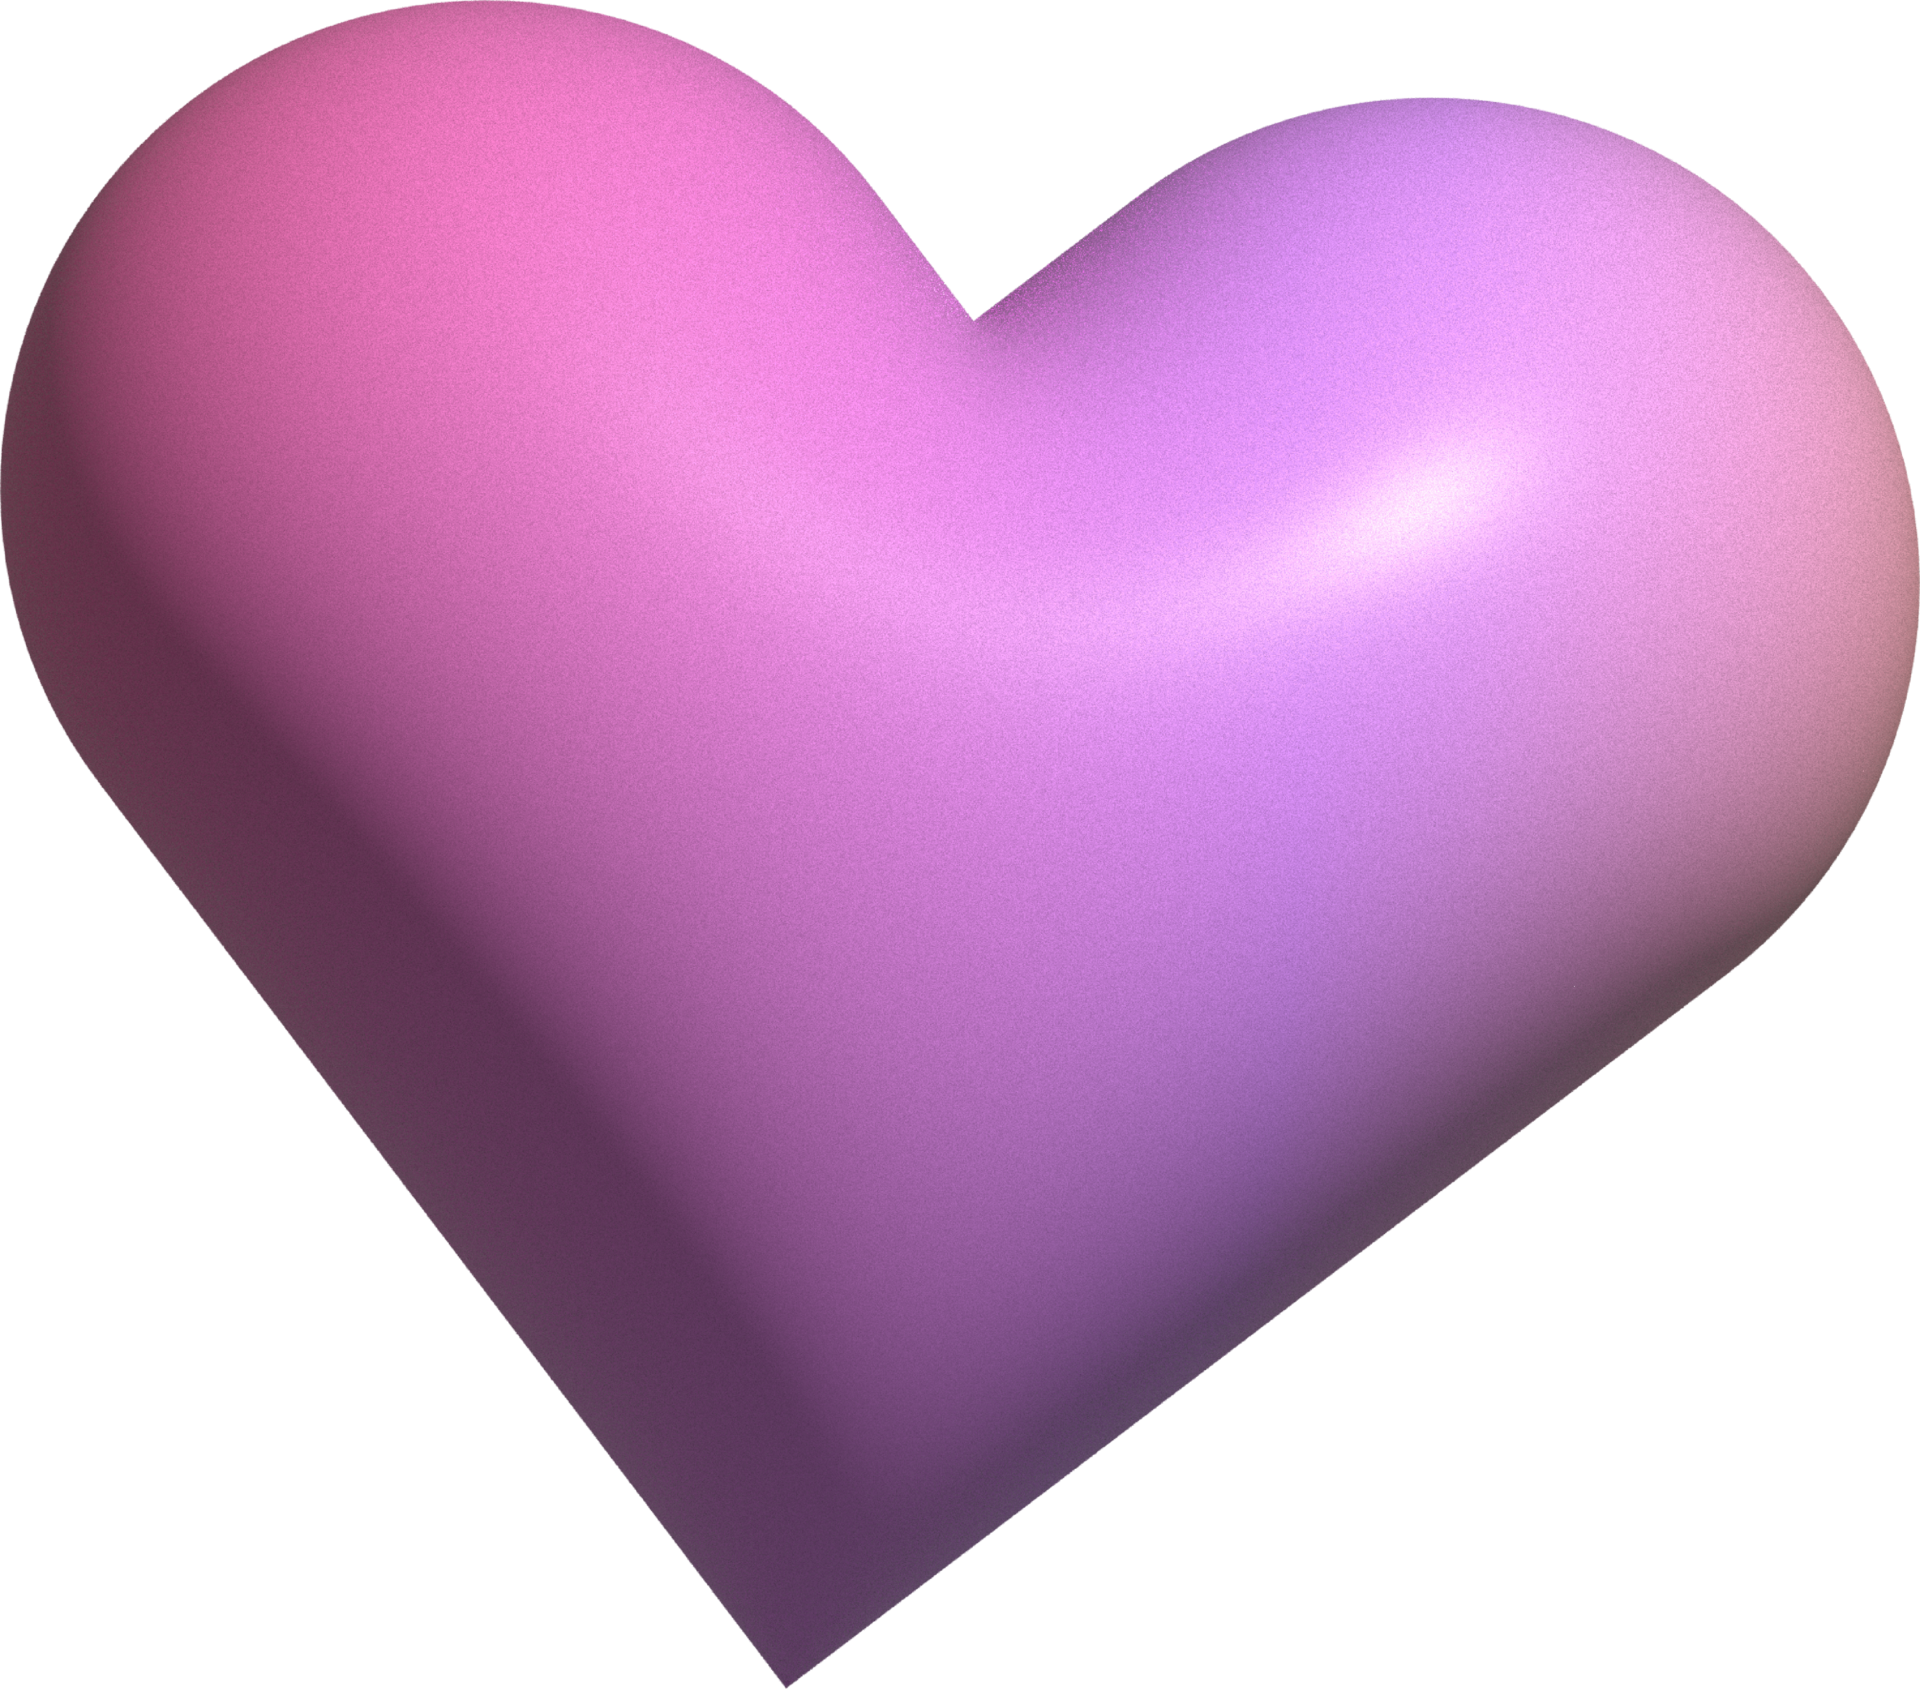 Bài trang trí 3d cực kỳ độc đáo với hình trái tim chuyển màu sắc sẽ khiến cho bạn cảm thấy yêu đời hơn bao giờ hết. Hãy tập trung vào thể hiện tình cảm, chúng tôi sẽ quản lí các chi tiết còn lại. Chiếc trái tim 3D tươi sáng sẽ thêm sắc màu sống động cho không gian của bạn.